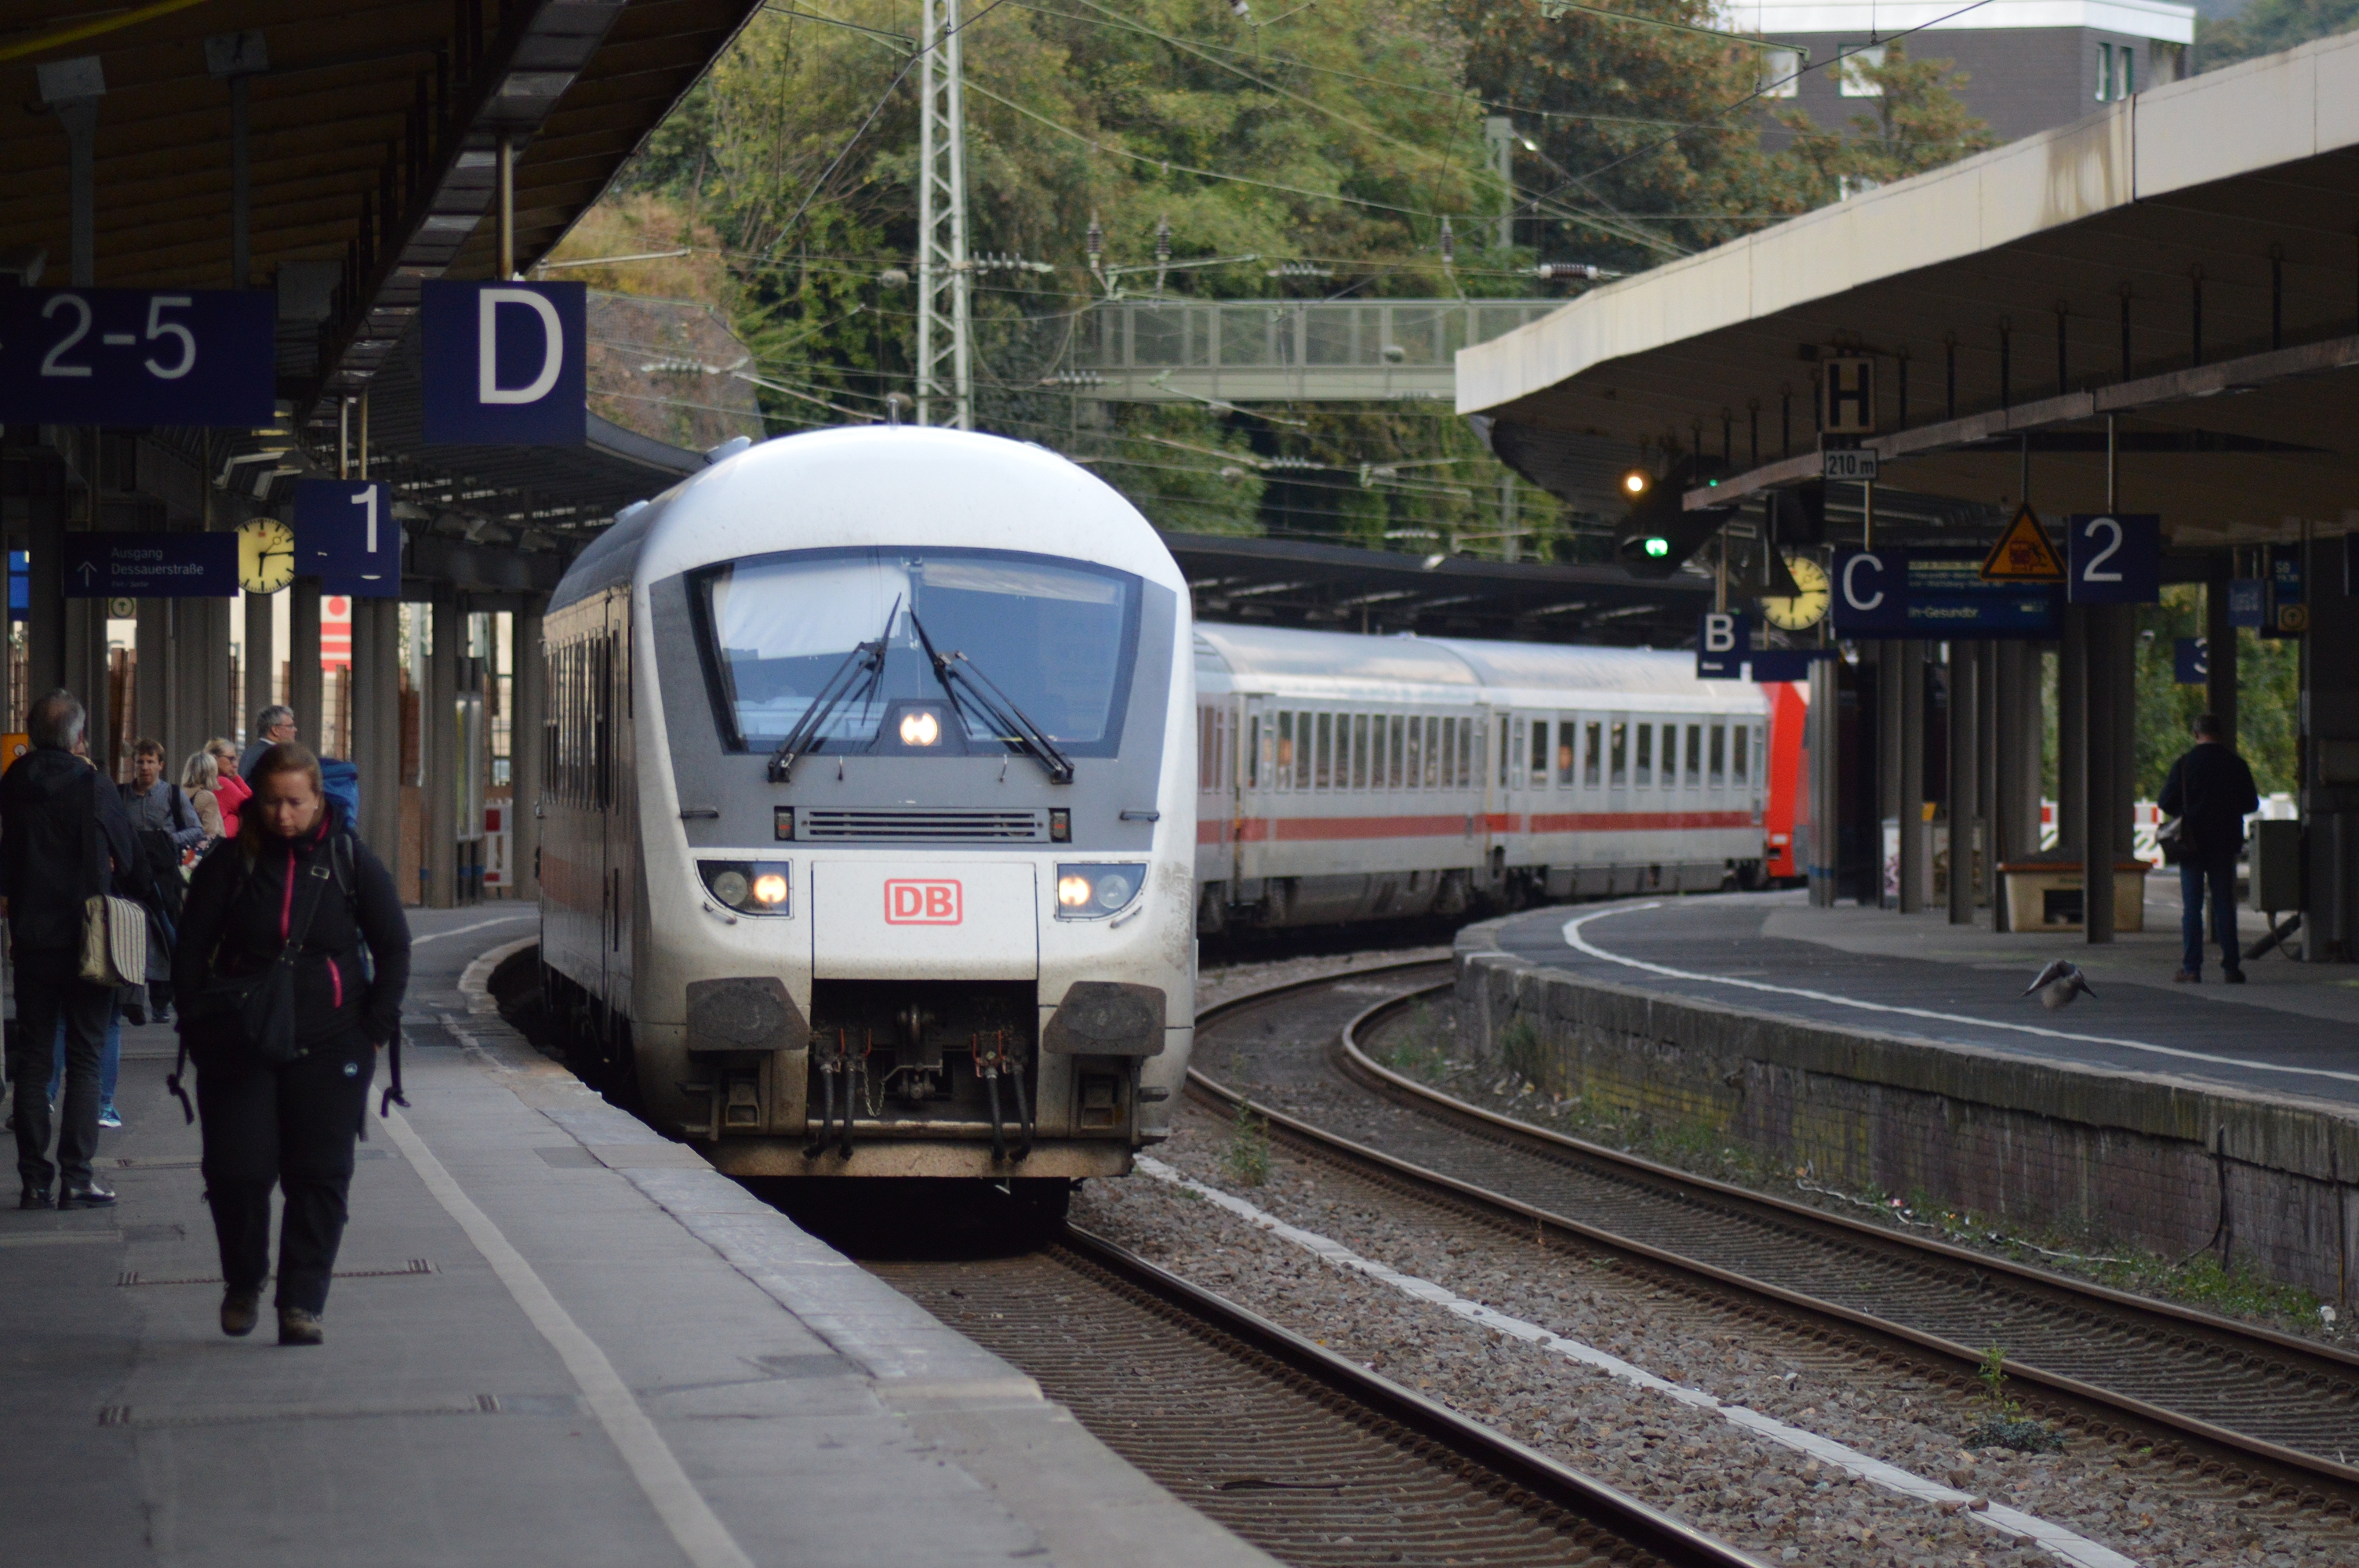 Symbolbild: Ein Intercity der Deutschen Bahn bei der Einfahrt in einen Bahnhof. (Foto: © Bahnblogstelle)